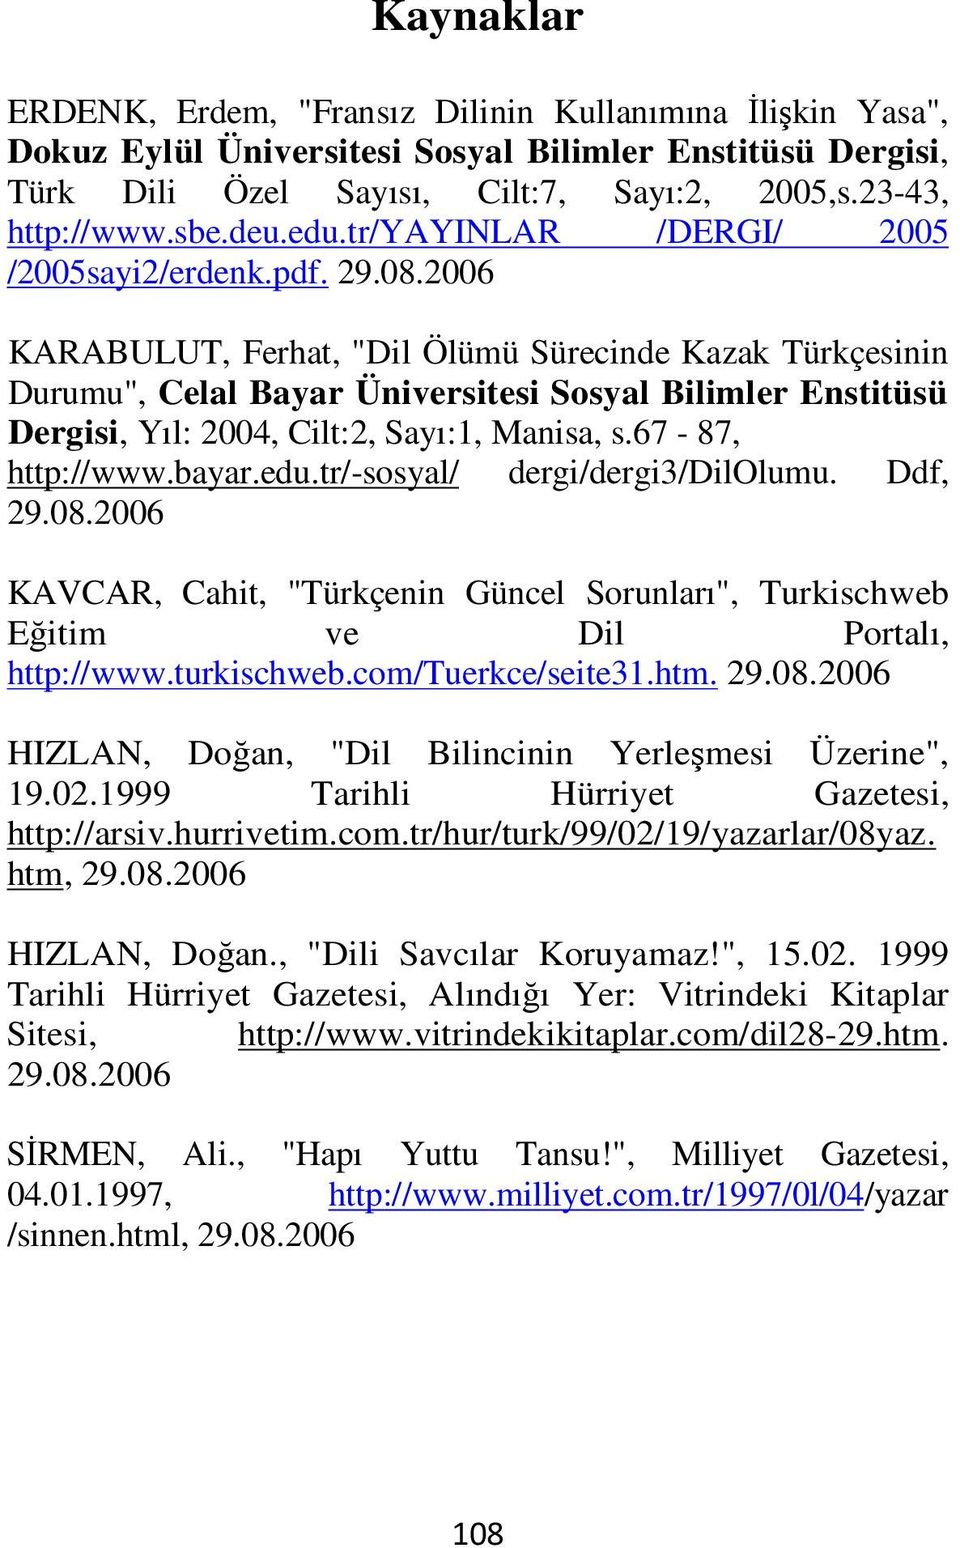 2006 KARABULUT, Ferhat, "Dil Ölümü Sürecinde Kazak Türkçesinin Durumu", Celal Bayar Üniversitesi Sosyal Bilimler Enstitüsü Dergisi, Yıl: 2004, Cilt:2, Sayı:1, Manisa, s.67-87, http://www.bayar.edu.